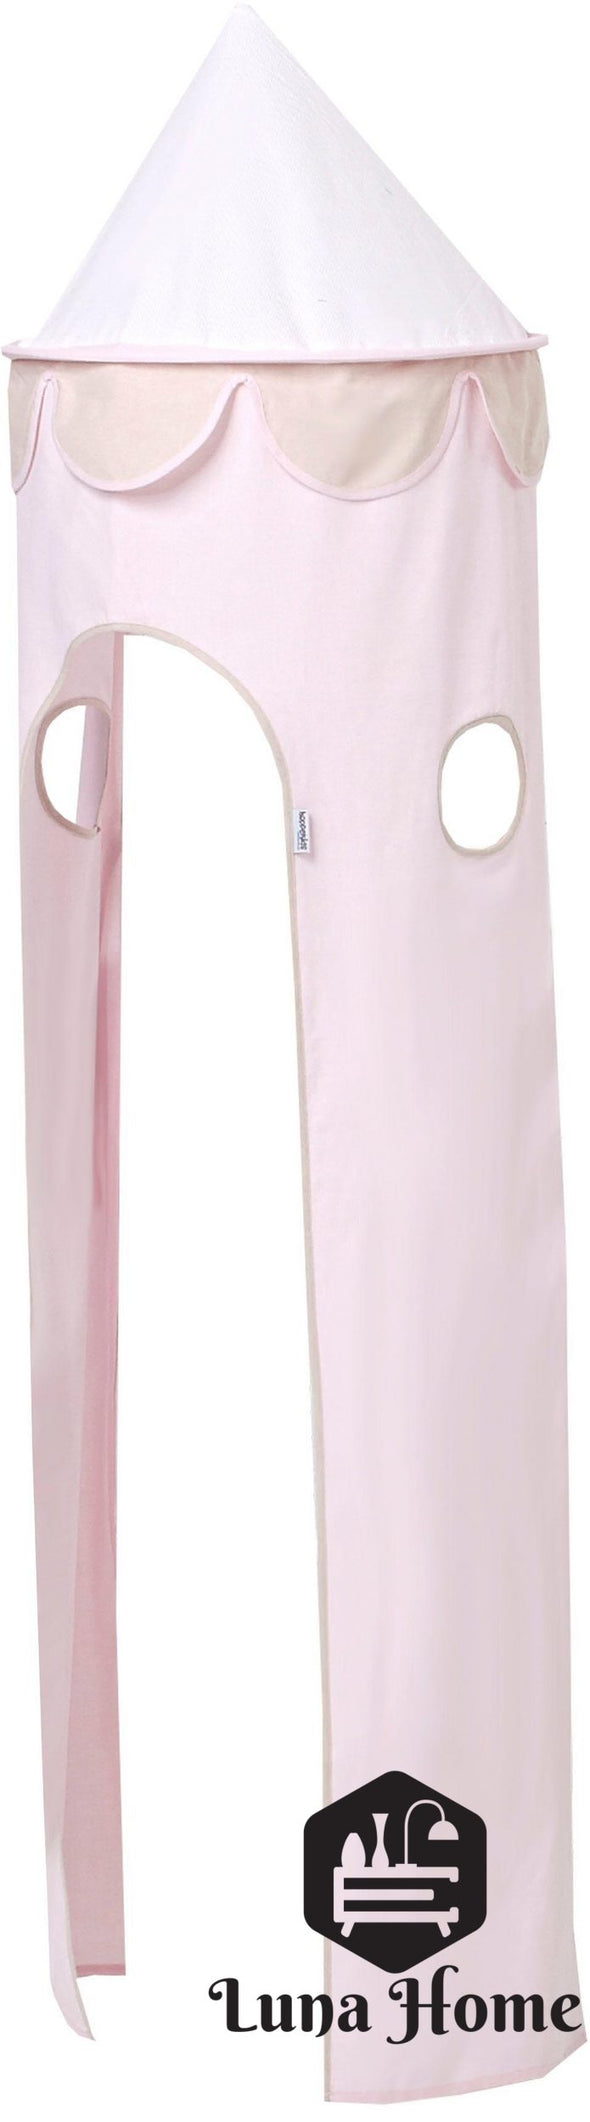 Îmbrăcăminte pat roz Turn